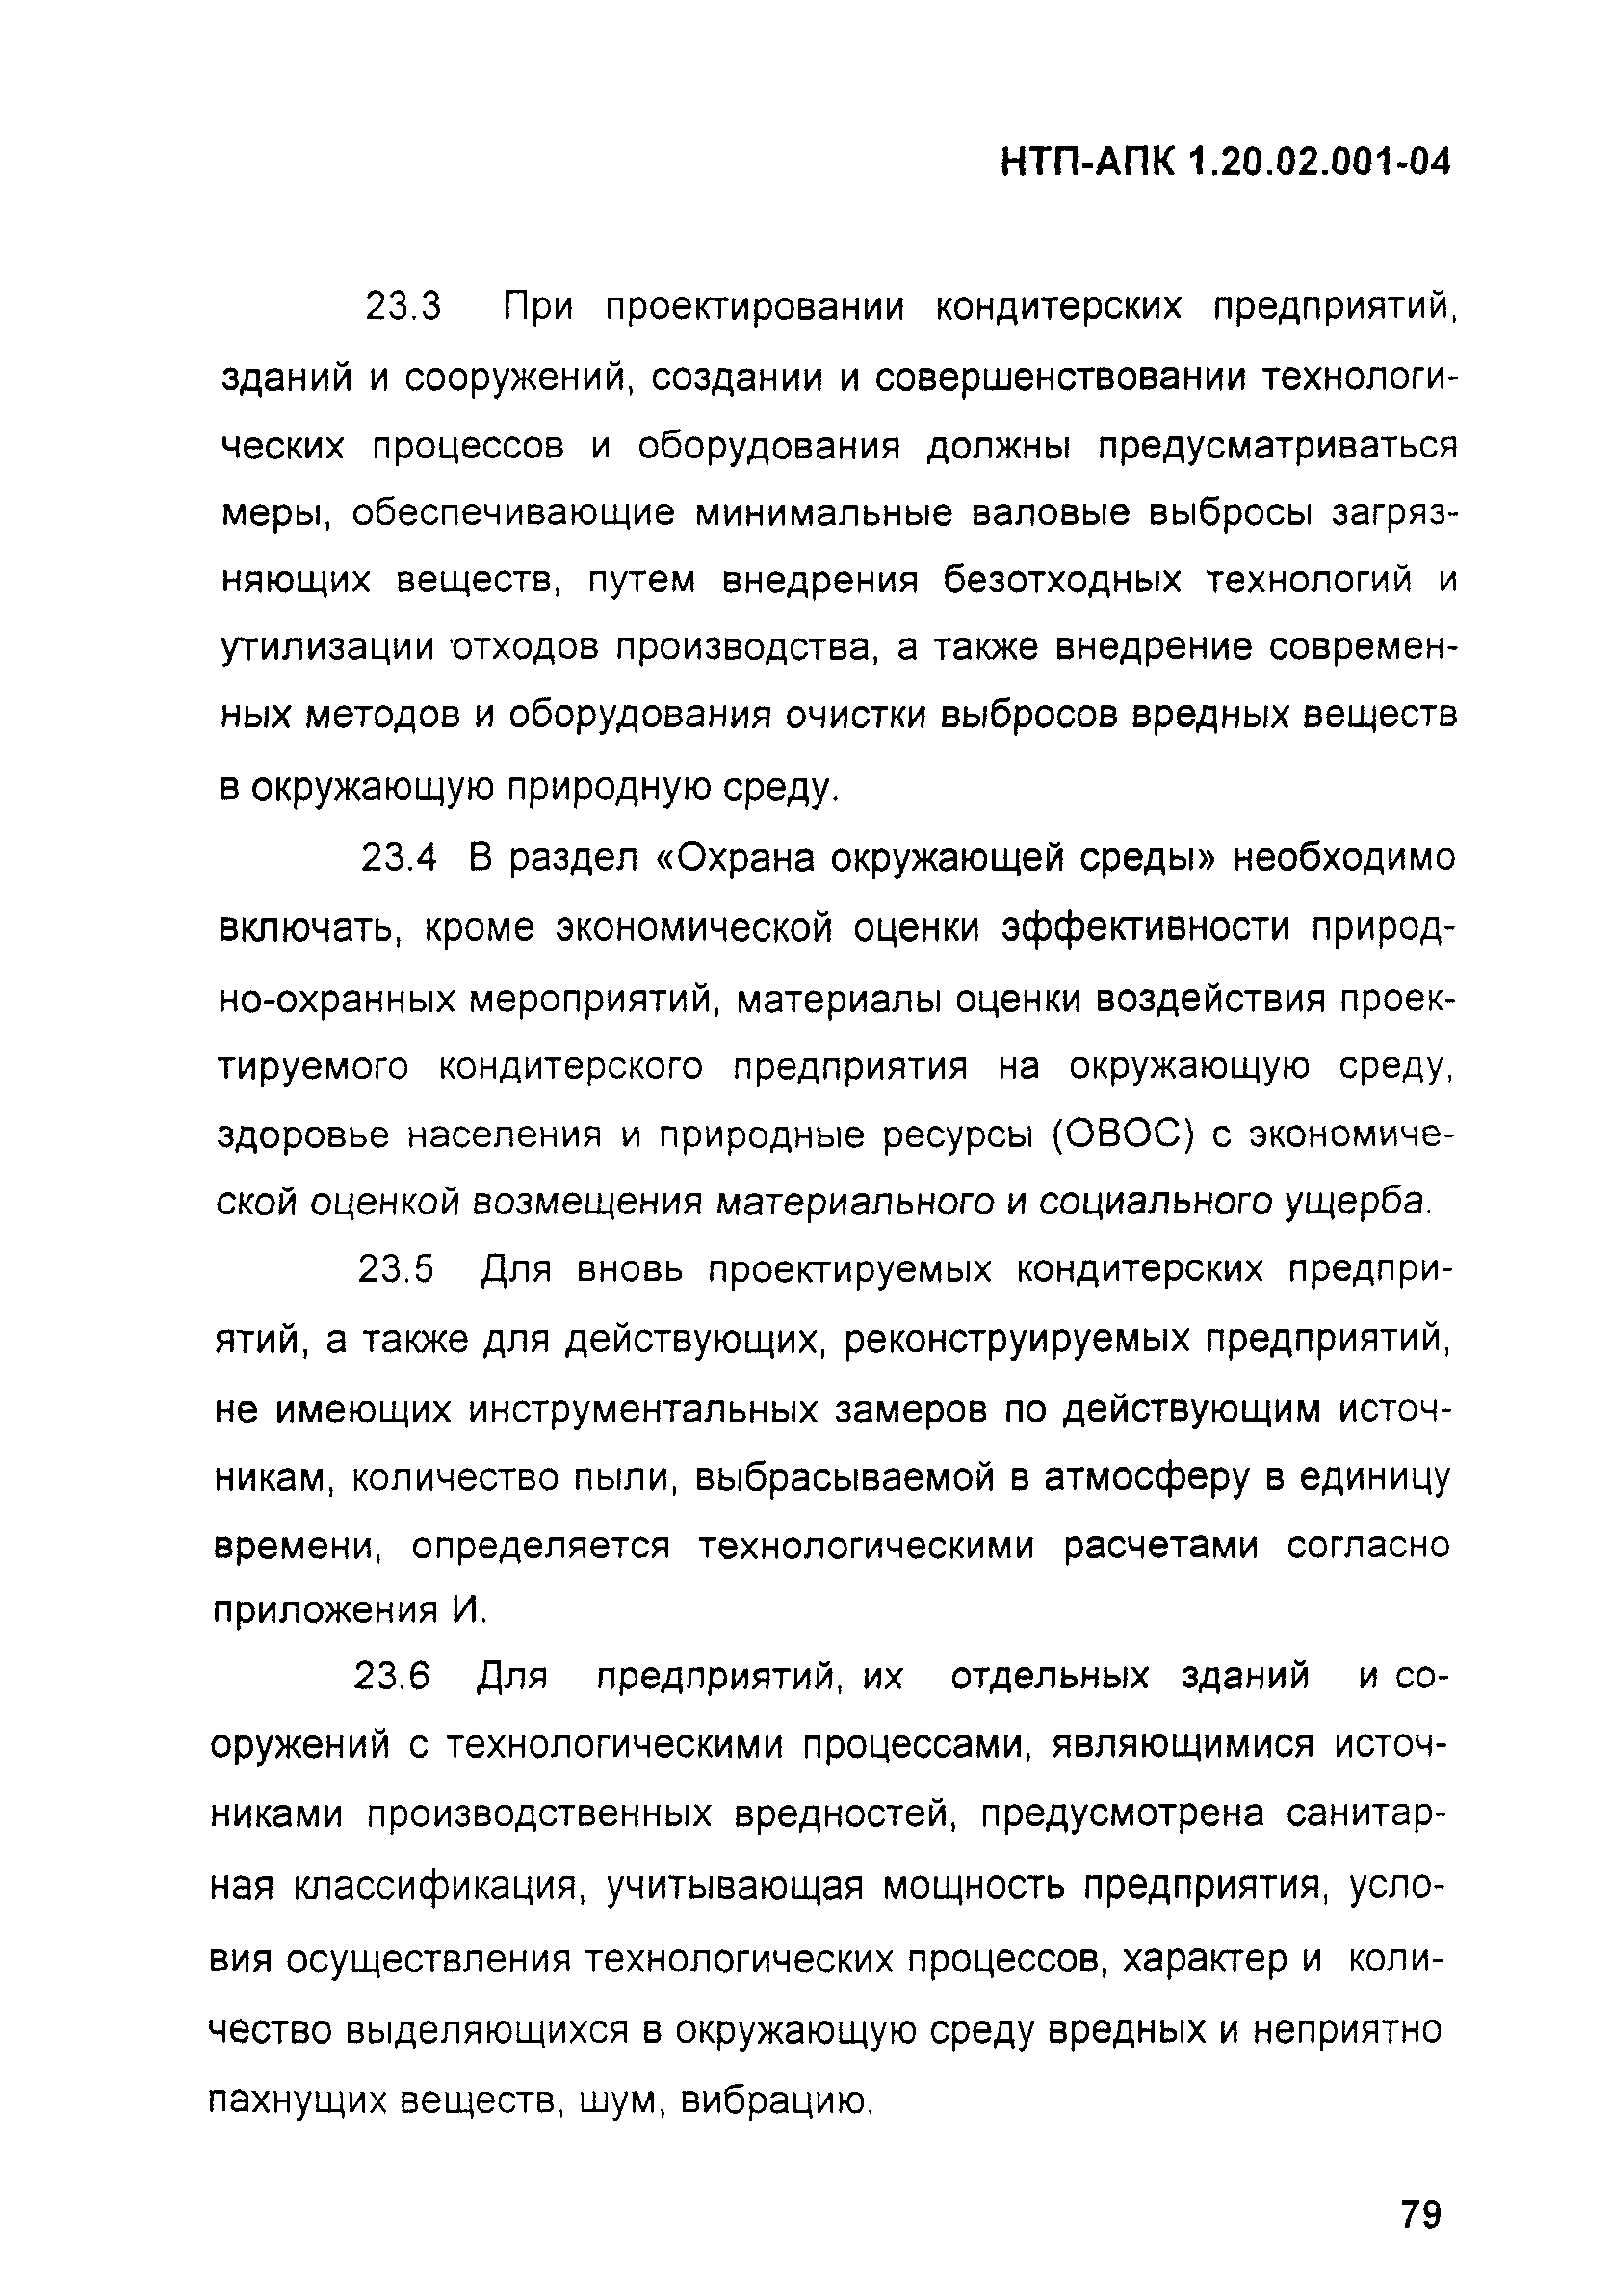 НТП АПК 1.20.02.001-04